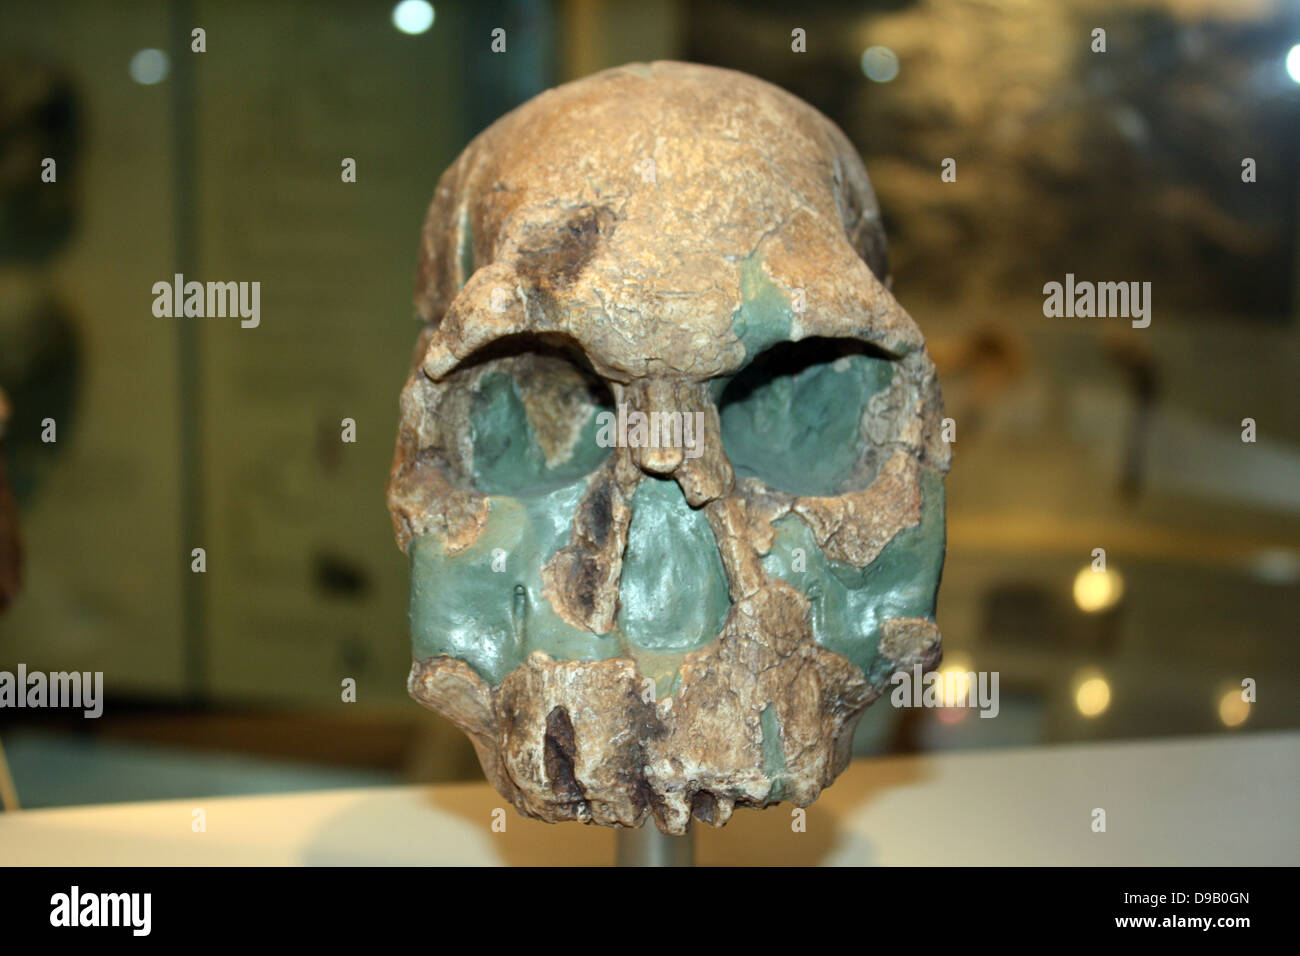 Premiers humains. Certains scientifiques croient que c'est le plus ancien de l'homme. Il est d'environ 1,9 millions d'années et appartient à l'espèce Homo rudolfensis (qui est parfois inclus dans l'Homo habilis). Il a un plus gros cerveau mais conserve la face plane et les grandes dents de l'australopithécinés. Outils de pierre du même âge ont également été découverts, mais pas sur le même site que ce fossile. Banque D'Images